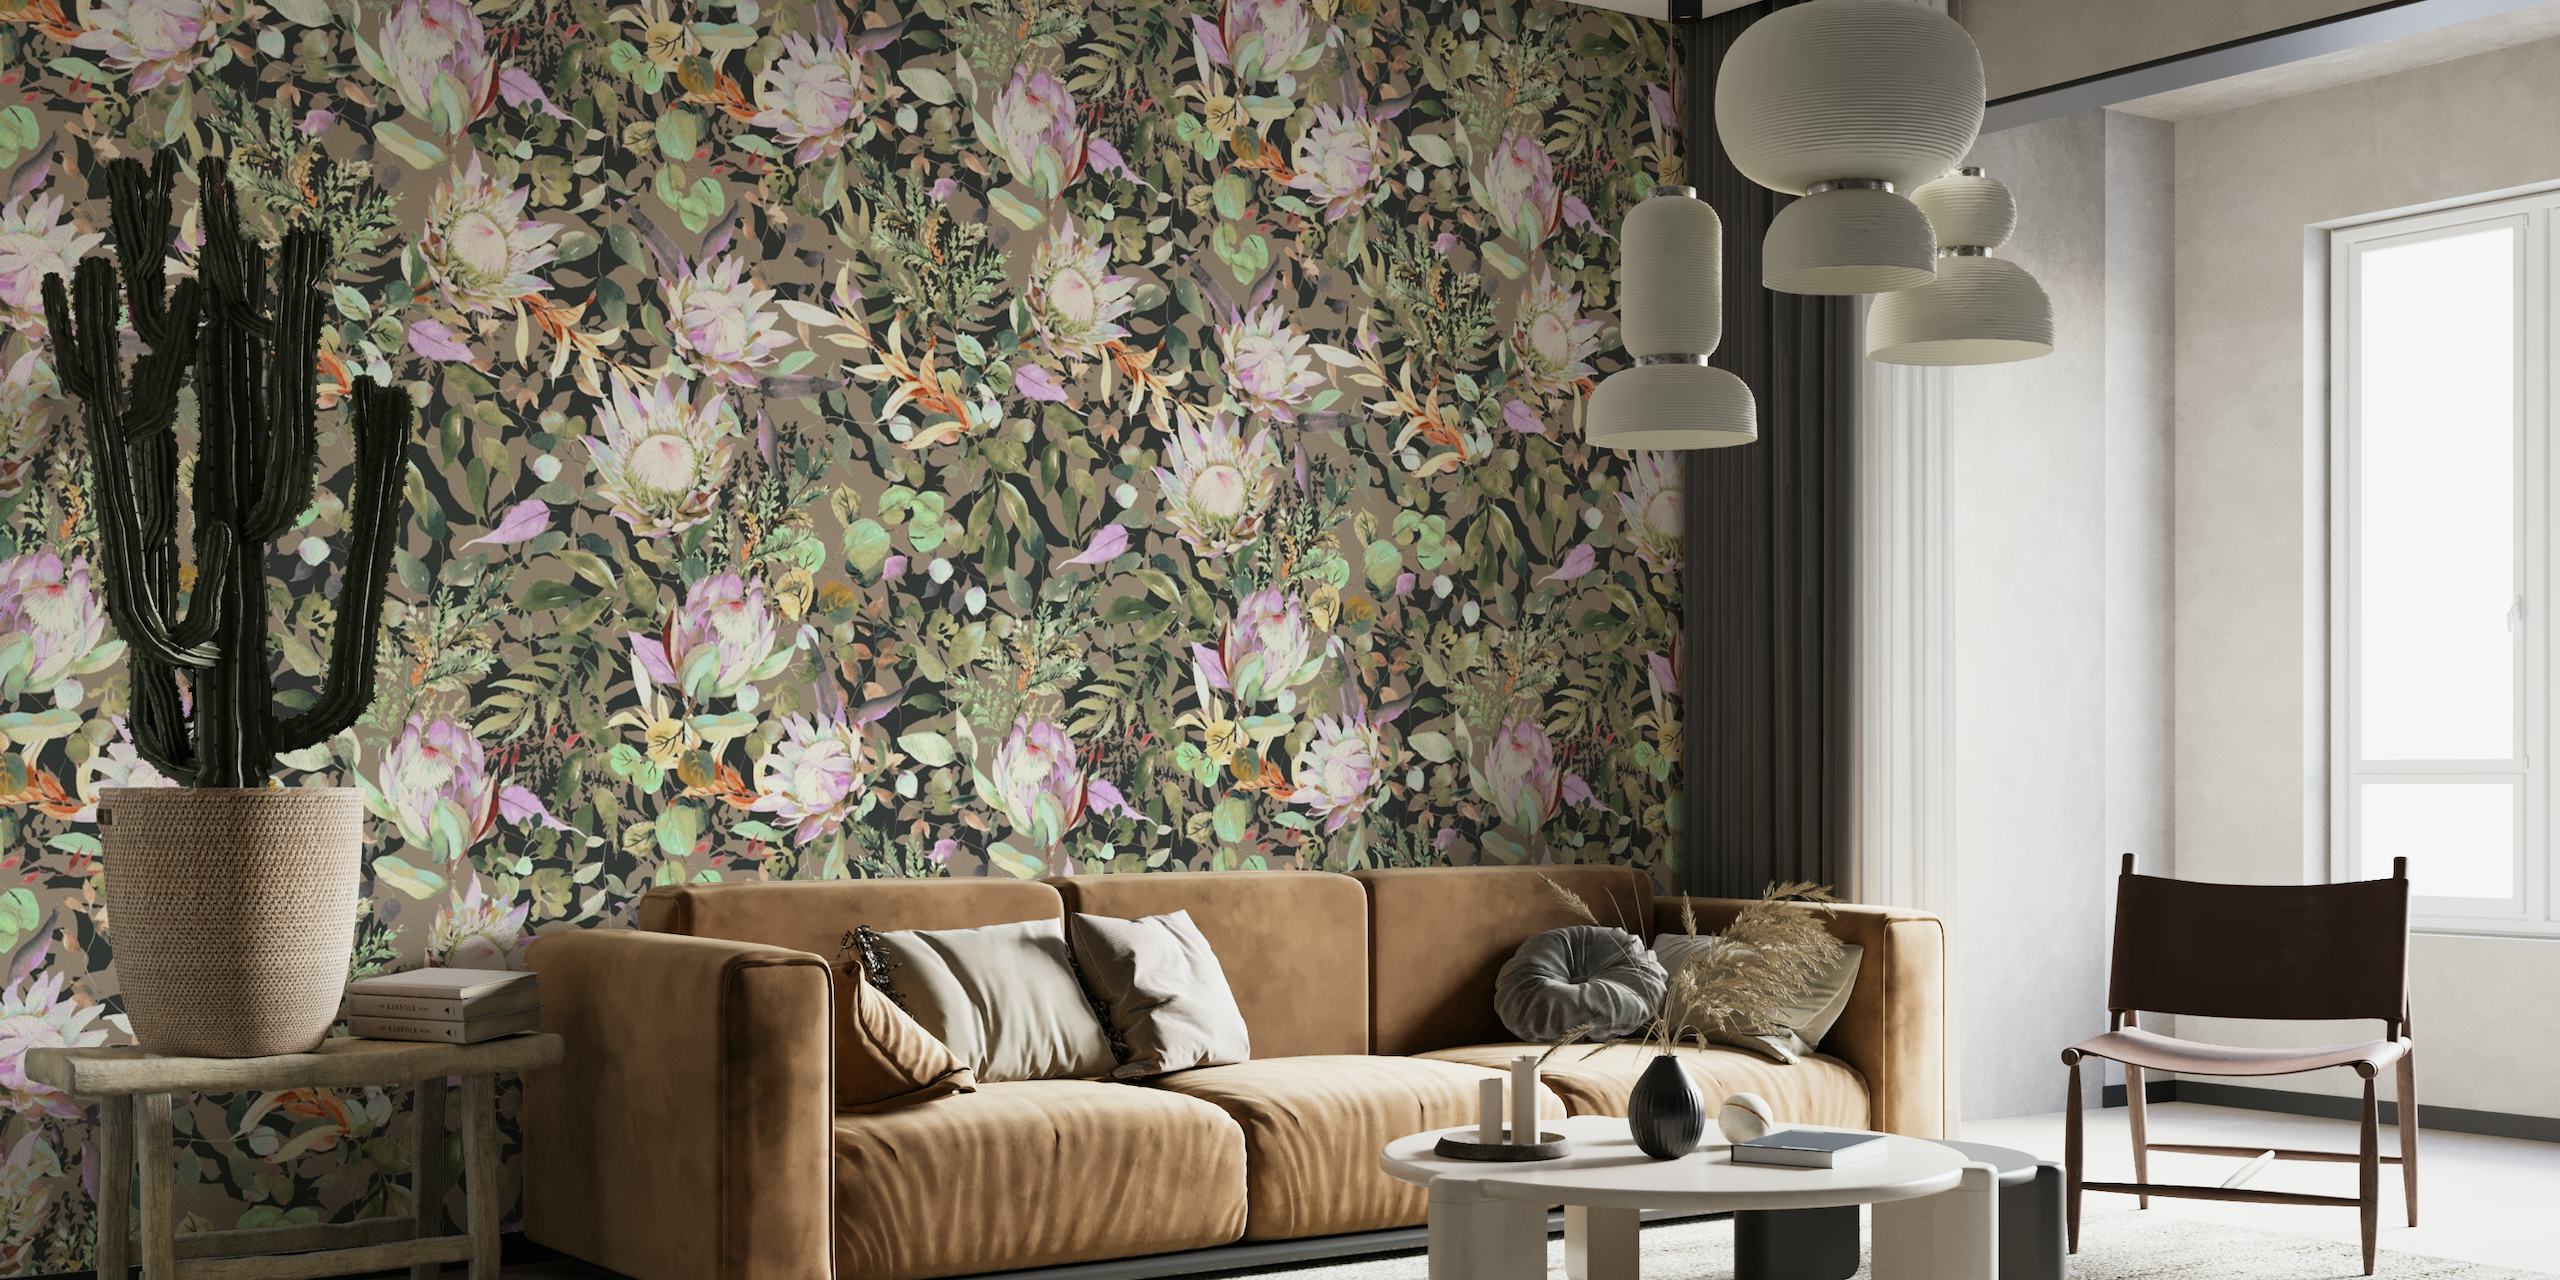 Zidna slika s protea cvjetnim uzorkom u boemskom stilu